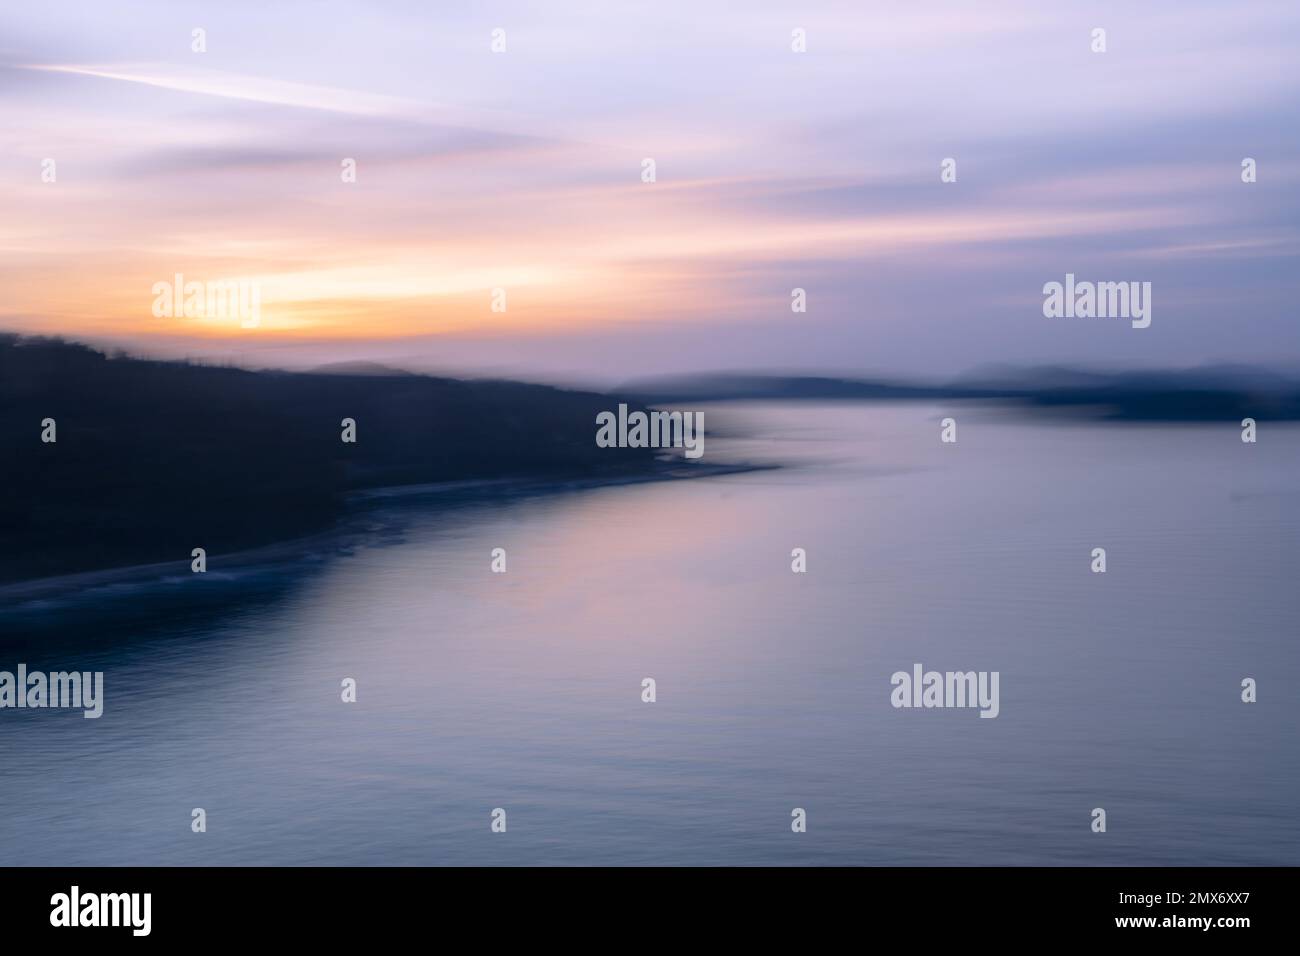 ICM, en mouvement de caméra, image abstraite floue de la mer Adradique au lever du soleil Banque D'Images